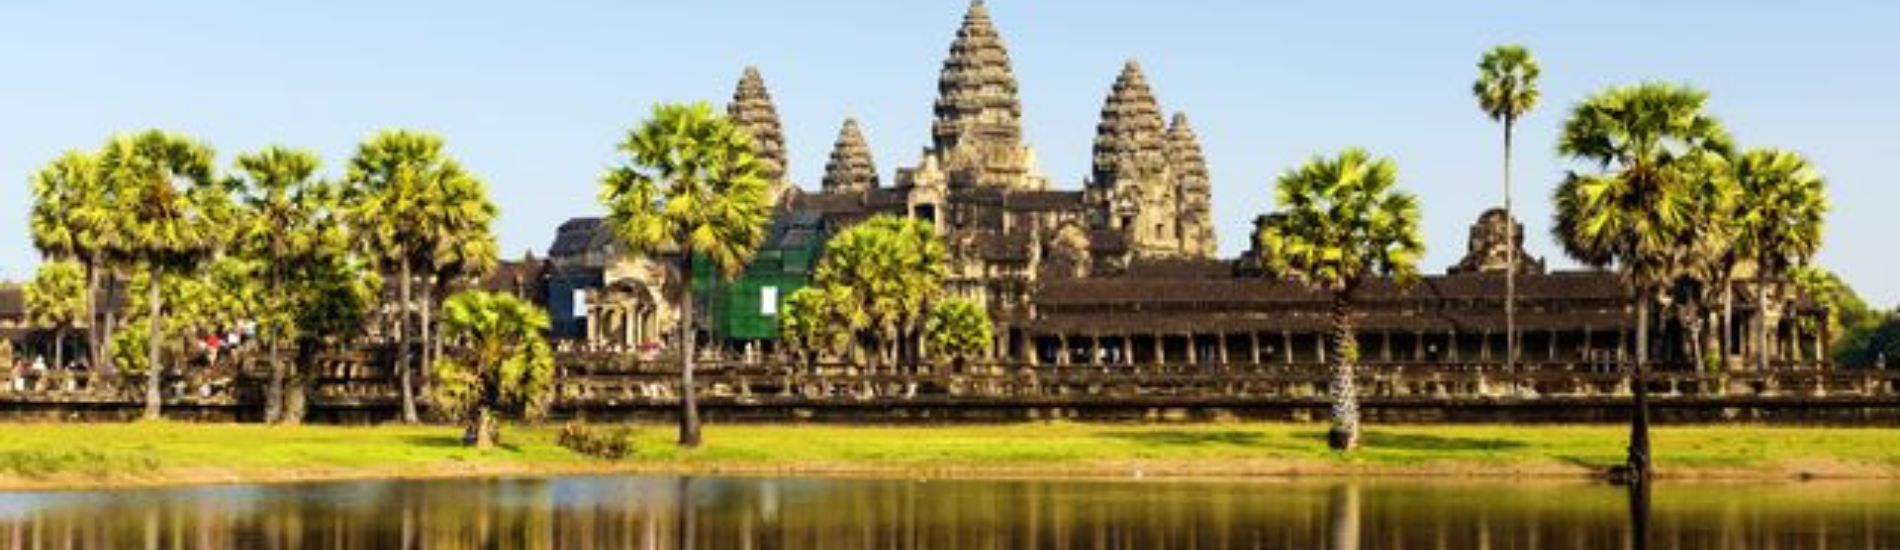 Visiting Angkor Wat 4 Days